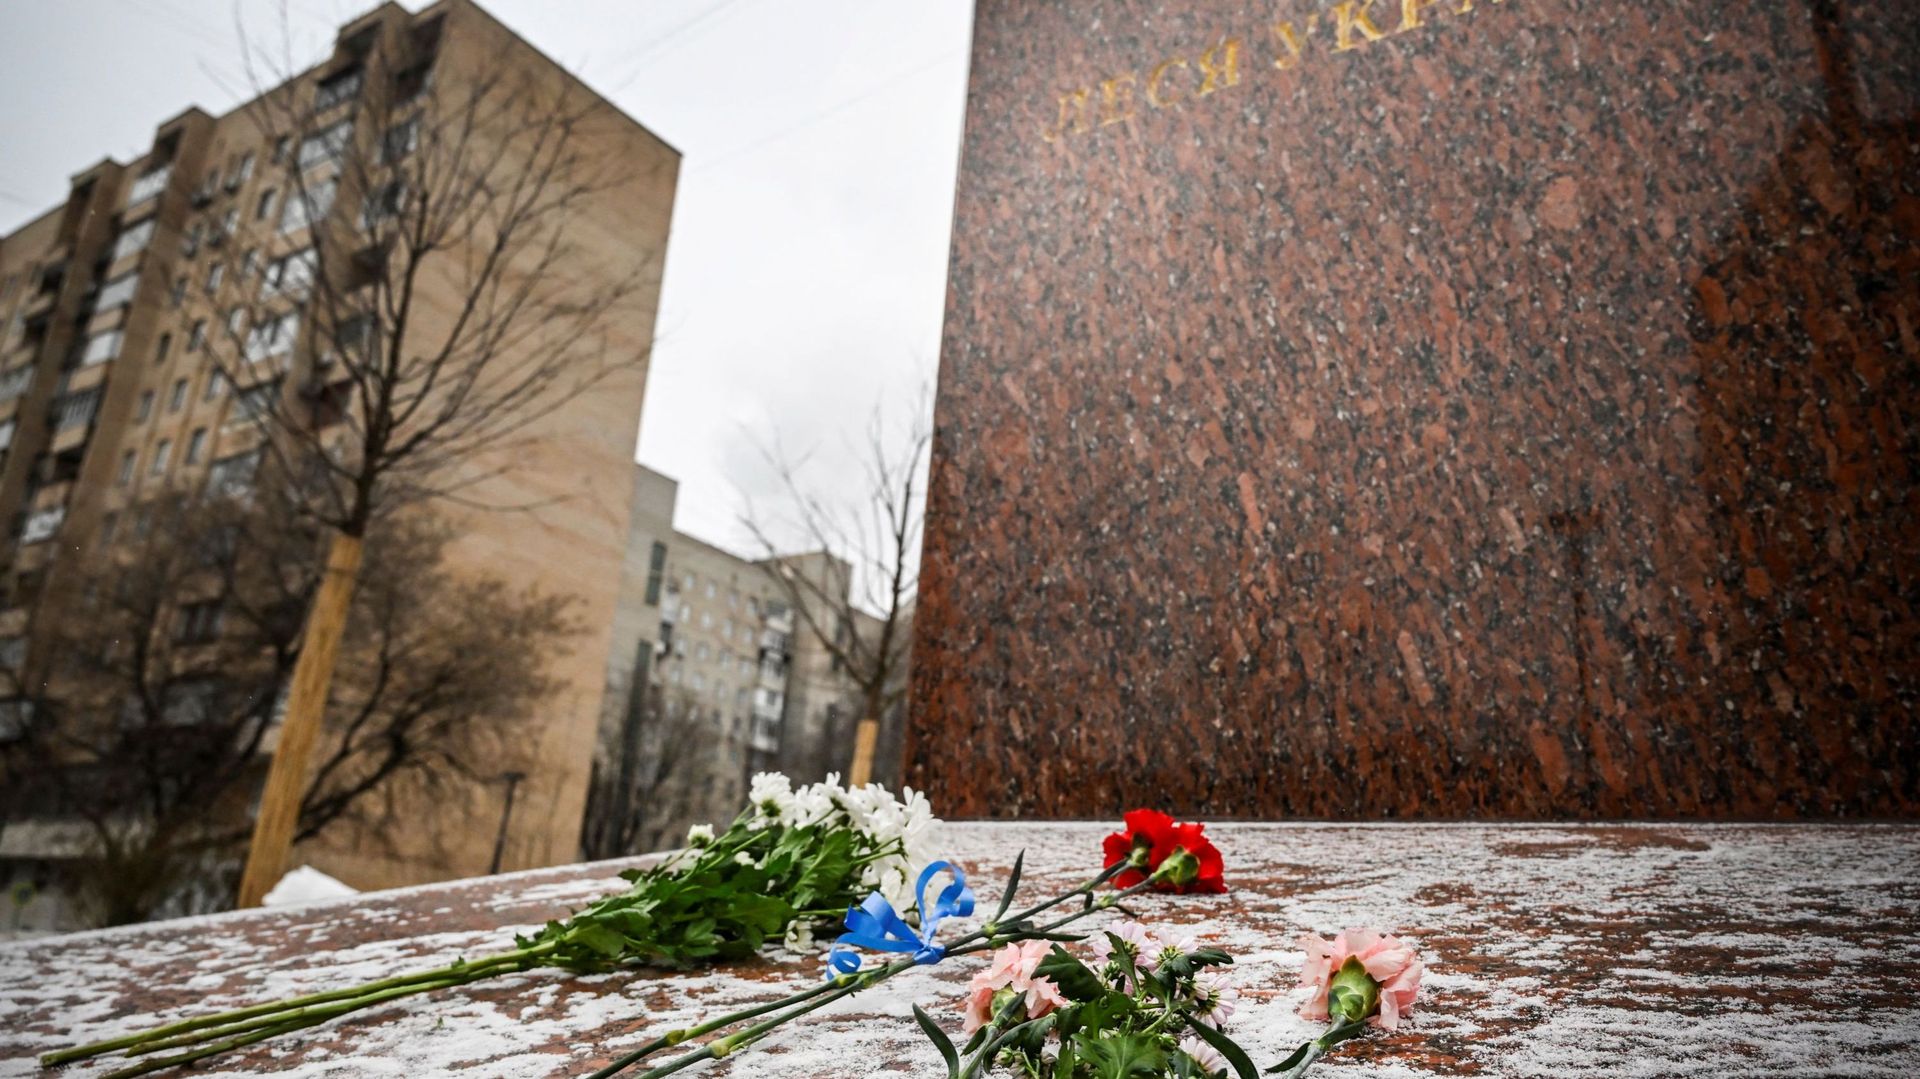 Les Russes continuent à déposer des fleurs devant ce monument, malgré la répression.